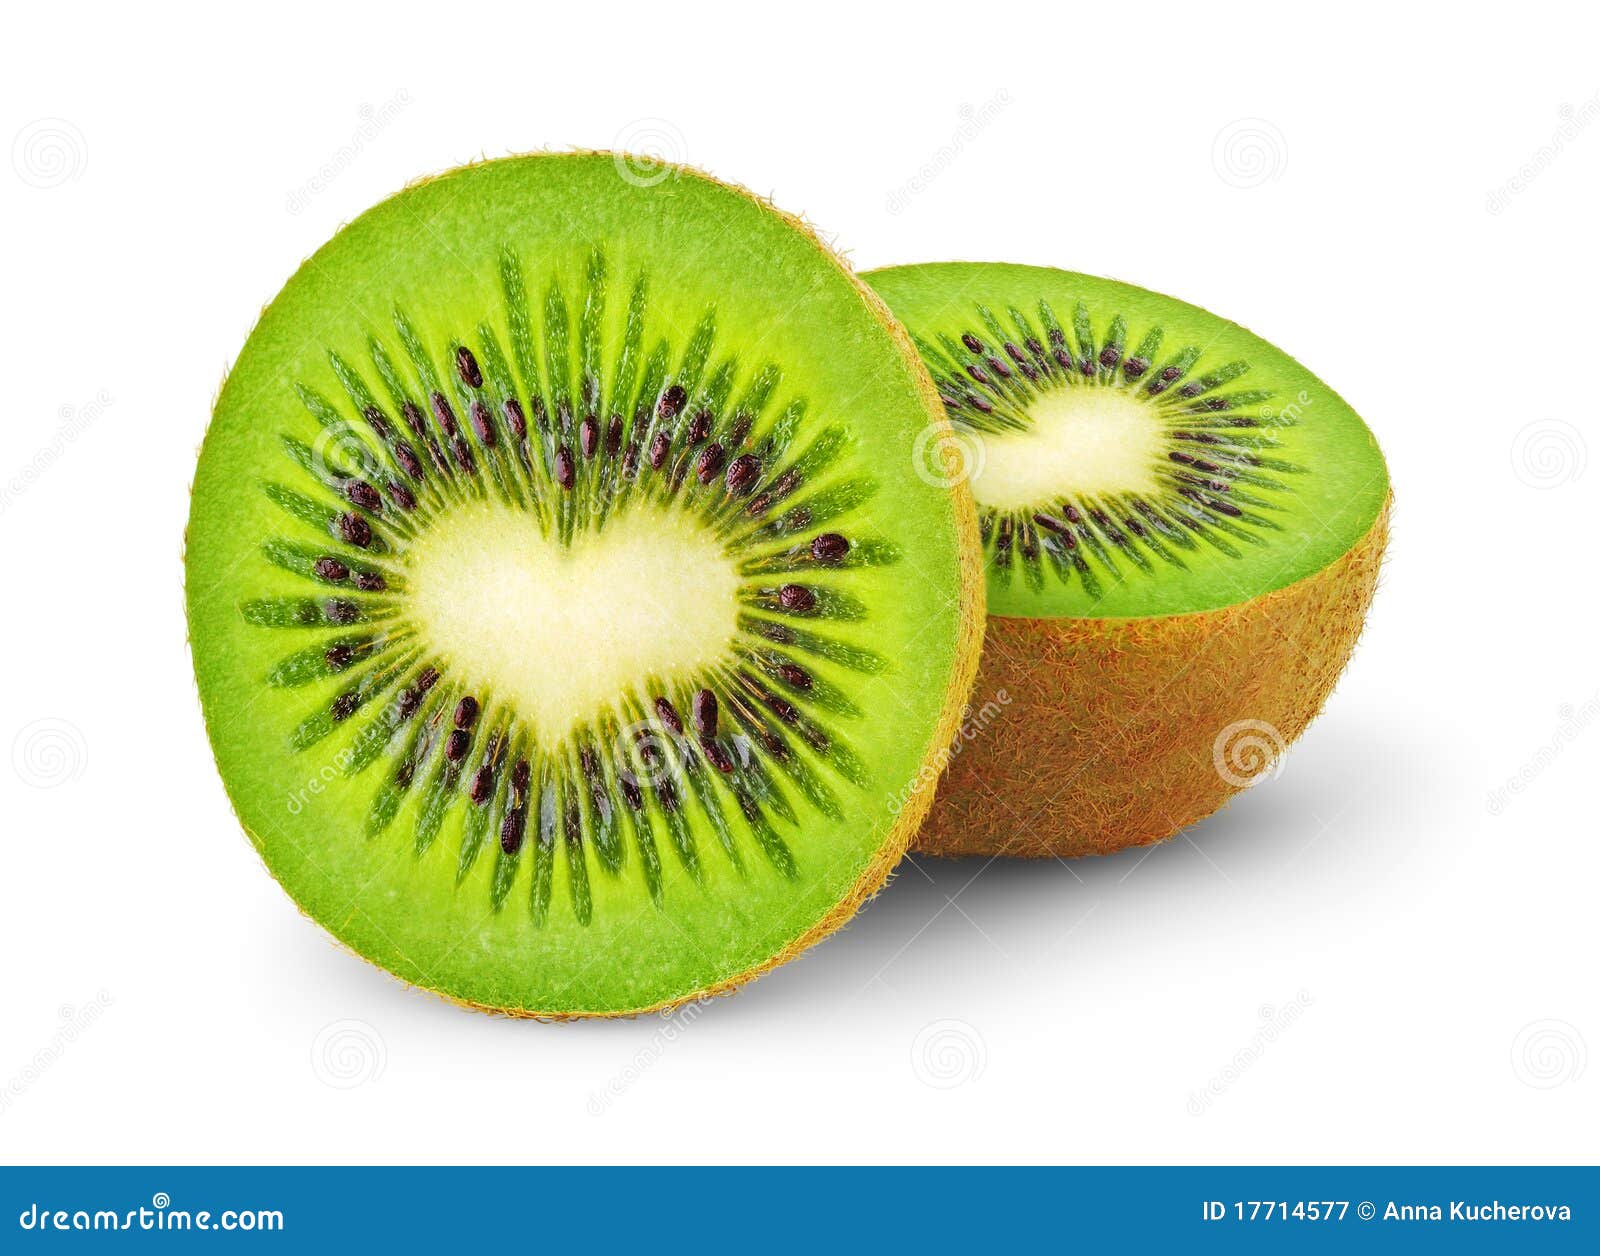 heart-d kiwi fruit